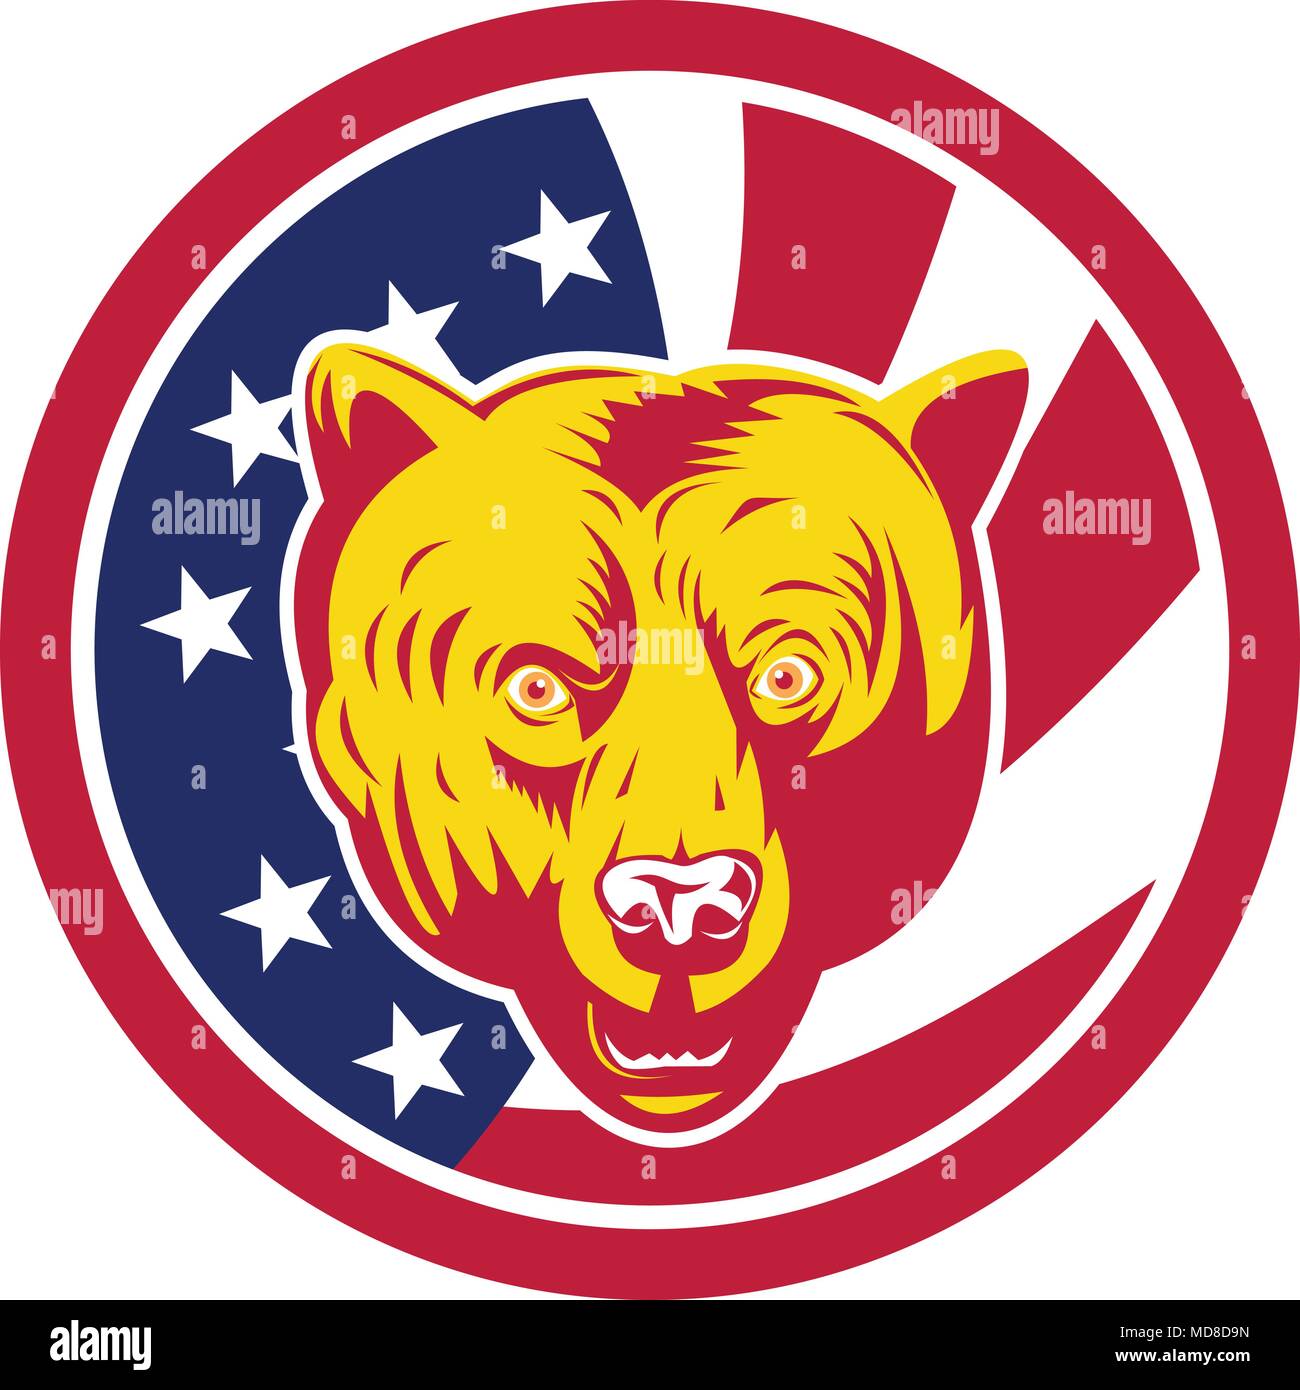 Icona di stile retrò illustrazione di un americano di orso bruno o California grizzly testa con gli Stati Uniti d'America USA star lamas banner o stelle un Illustrazione Vettoriale